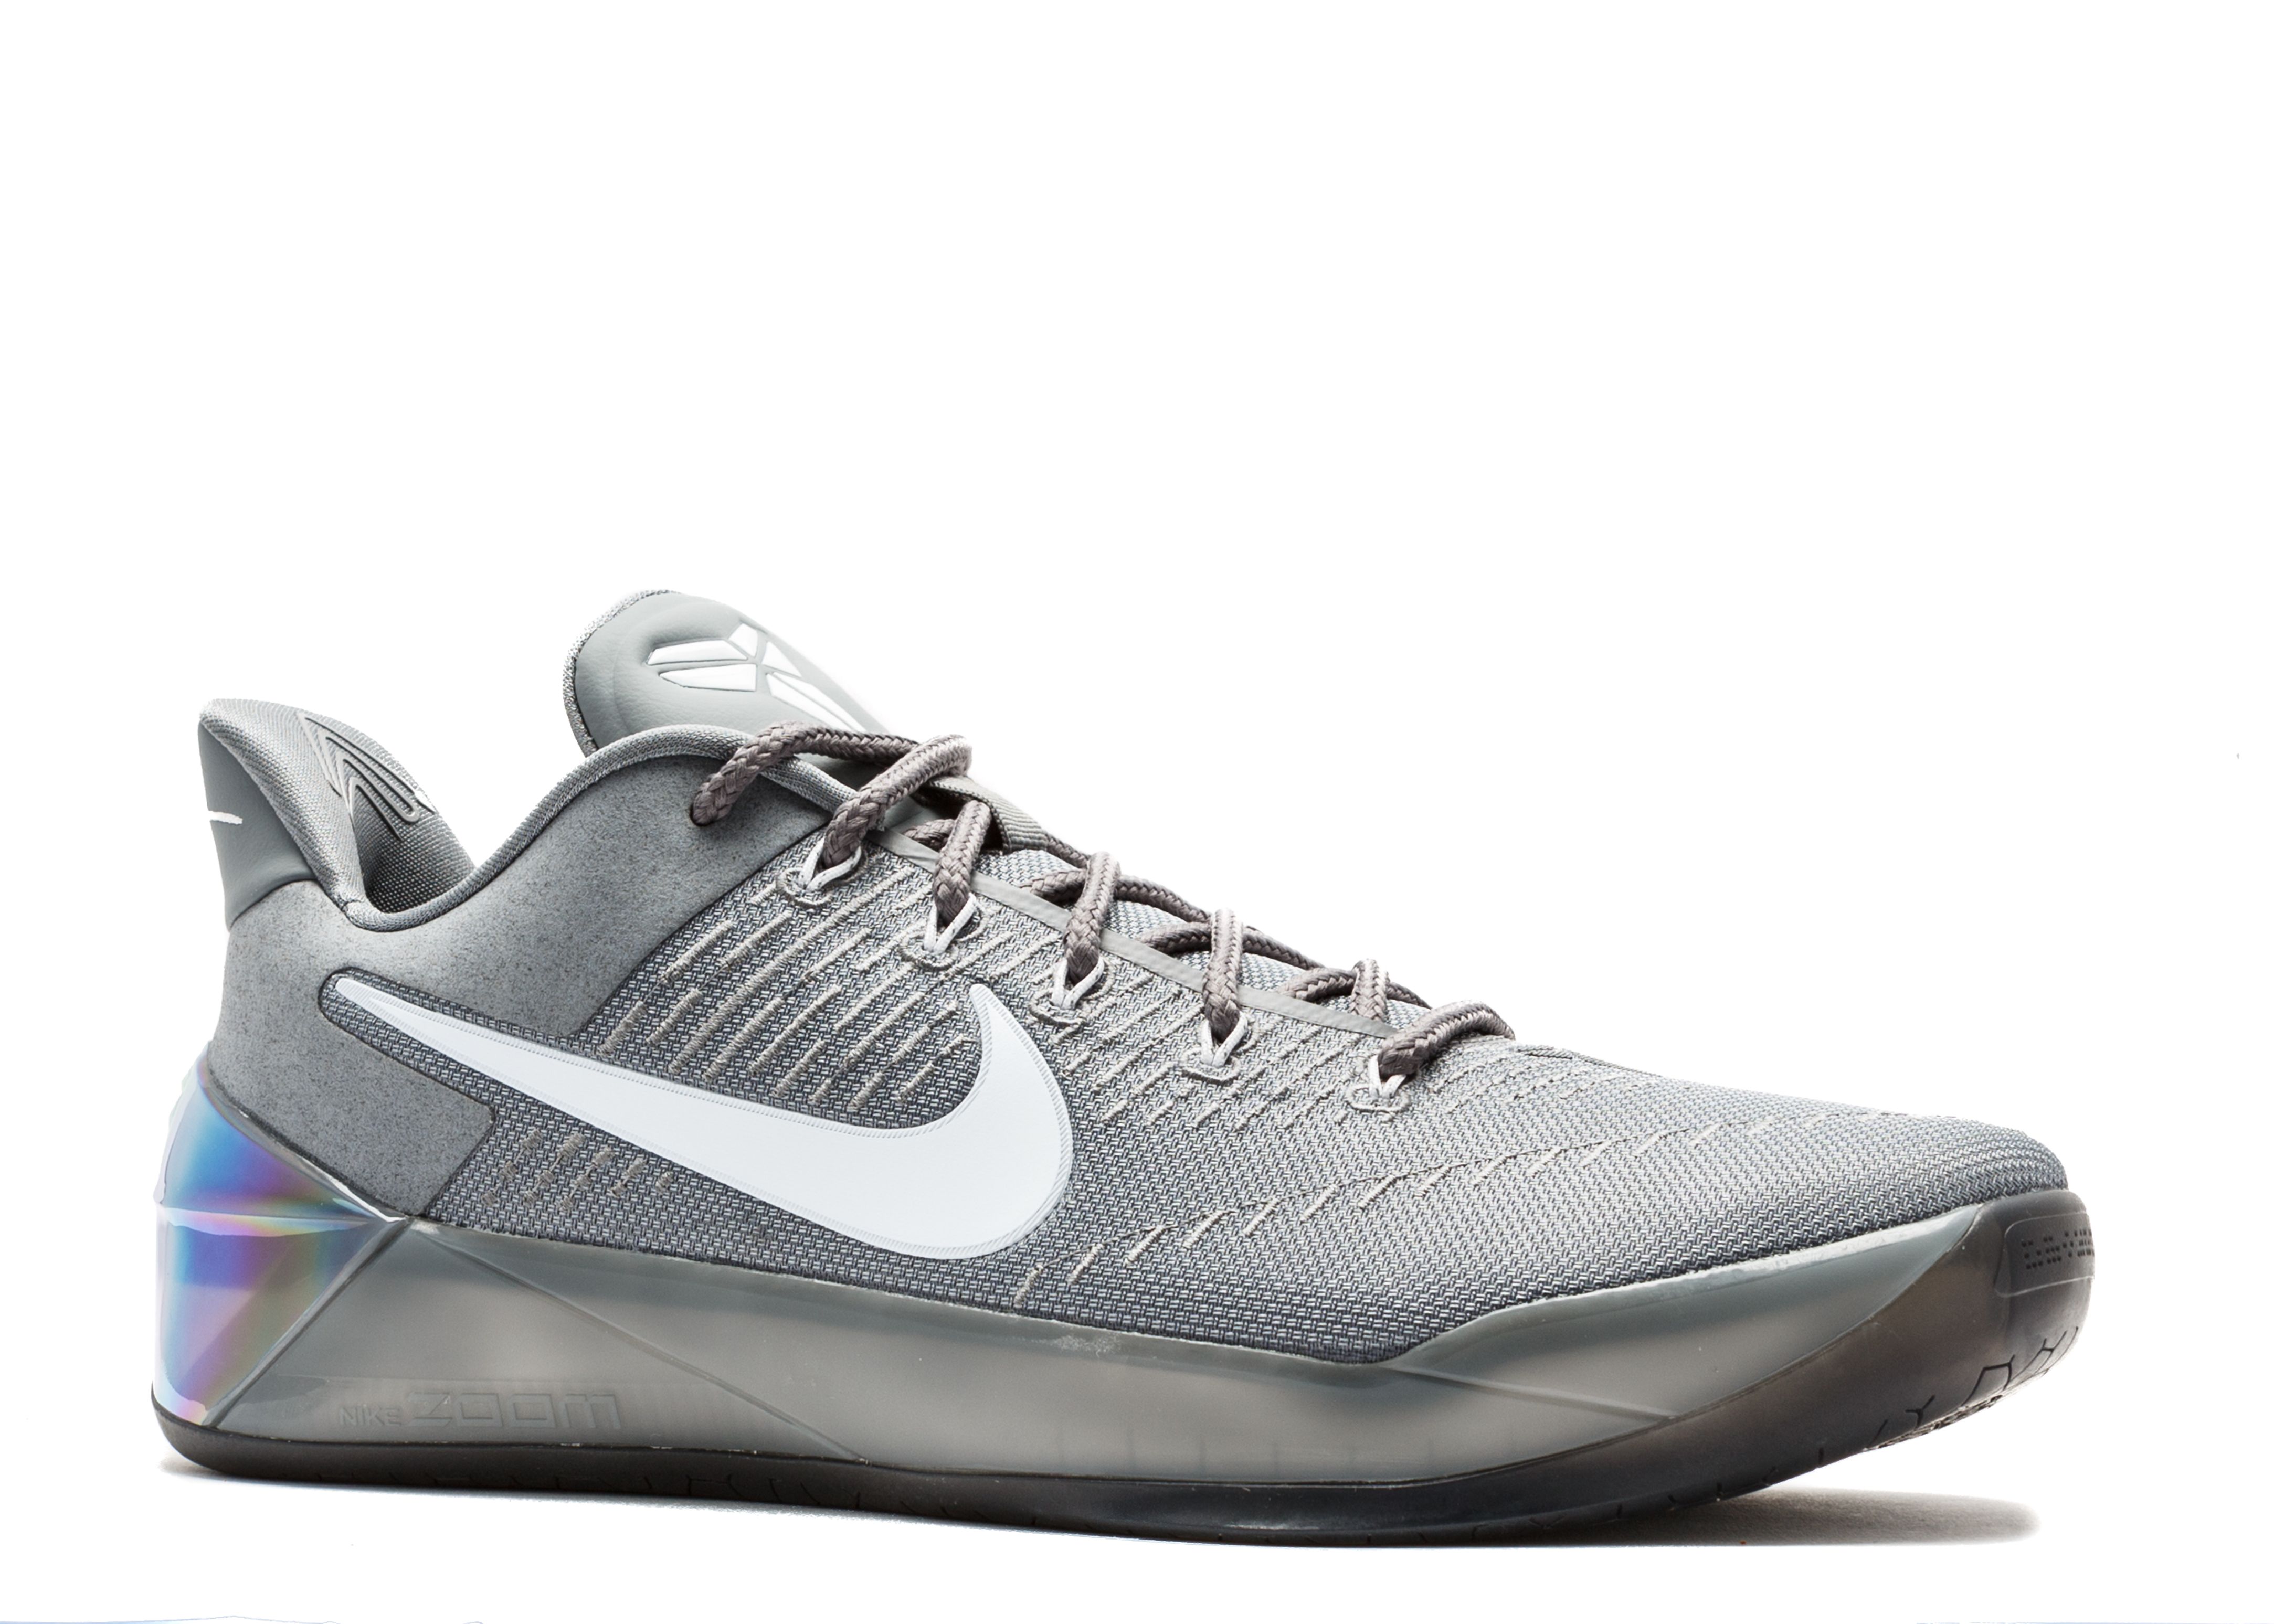 Kobe A.D. 'Cool Grey' - Nike - 852425 